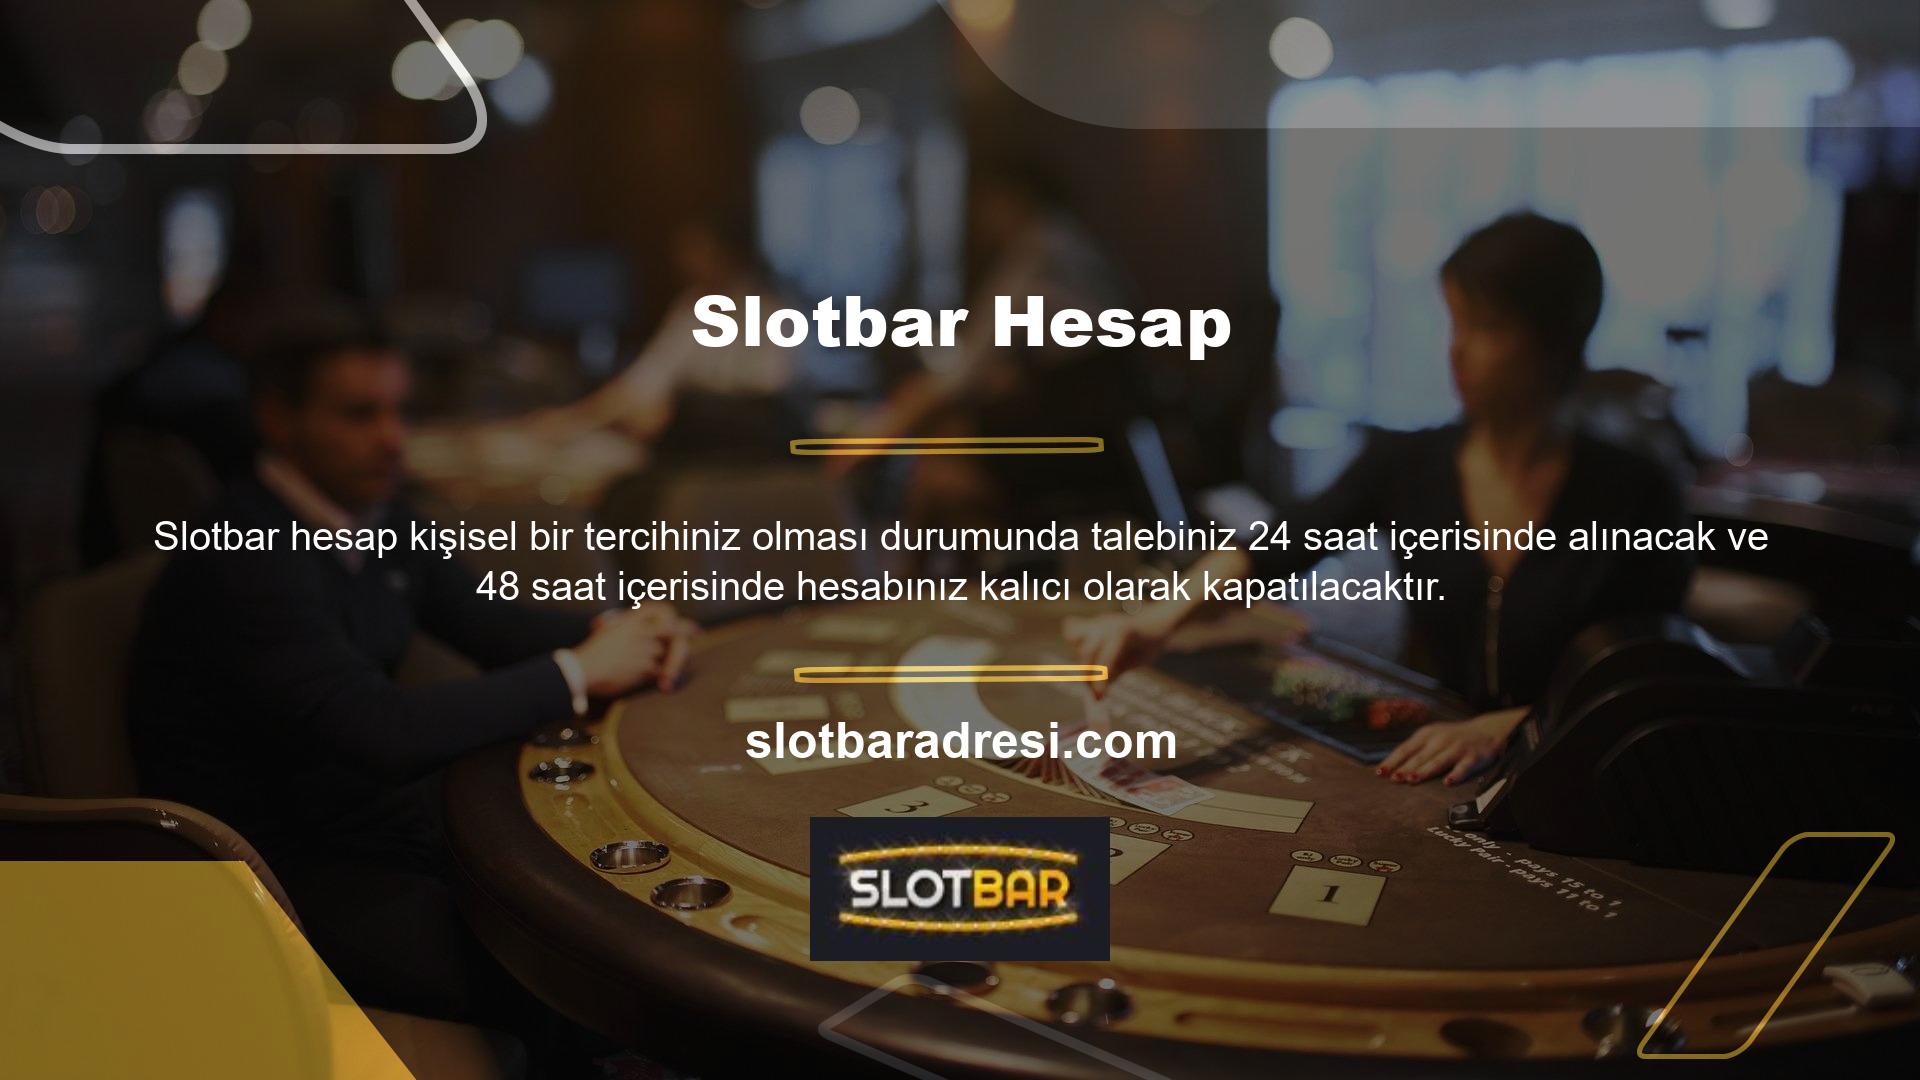 Slotbar şeffaf yönetimi, üyelerin Slotbar Ortak Üye Çıkarma Talebi ile hesap açarken gösterilen hız ve nezaketten hangi koşullar altında yararlanabileceğini anlayarak, en güvenilir yasa dışı bahisçi kategorisinde başarılı olmalarını sağlar